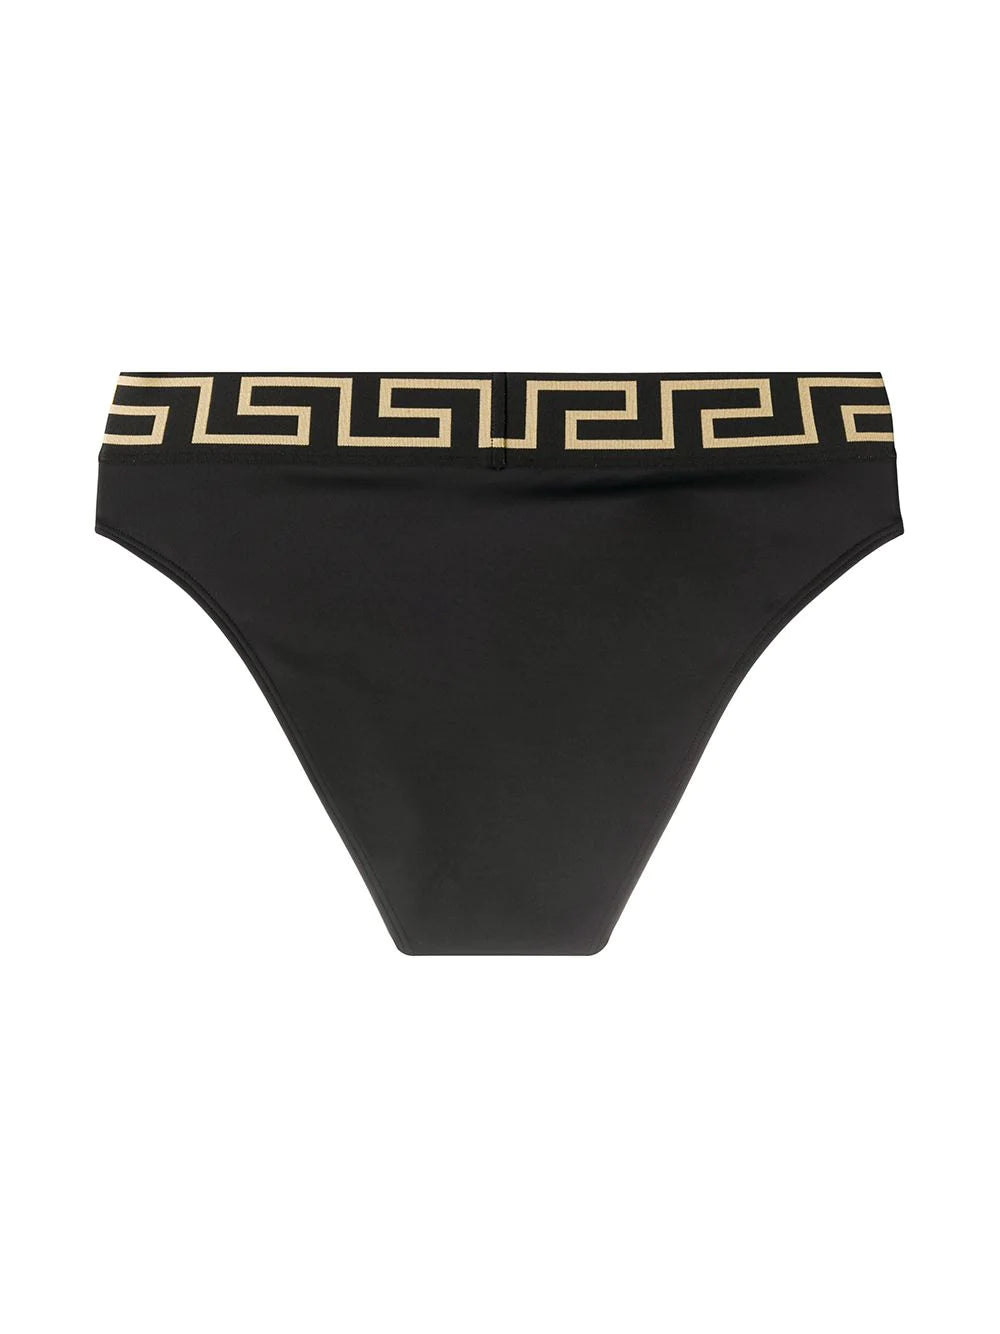 Versace Black Greek Key Swim Bikini Bottom